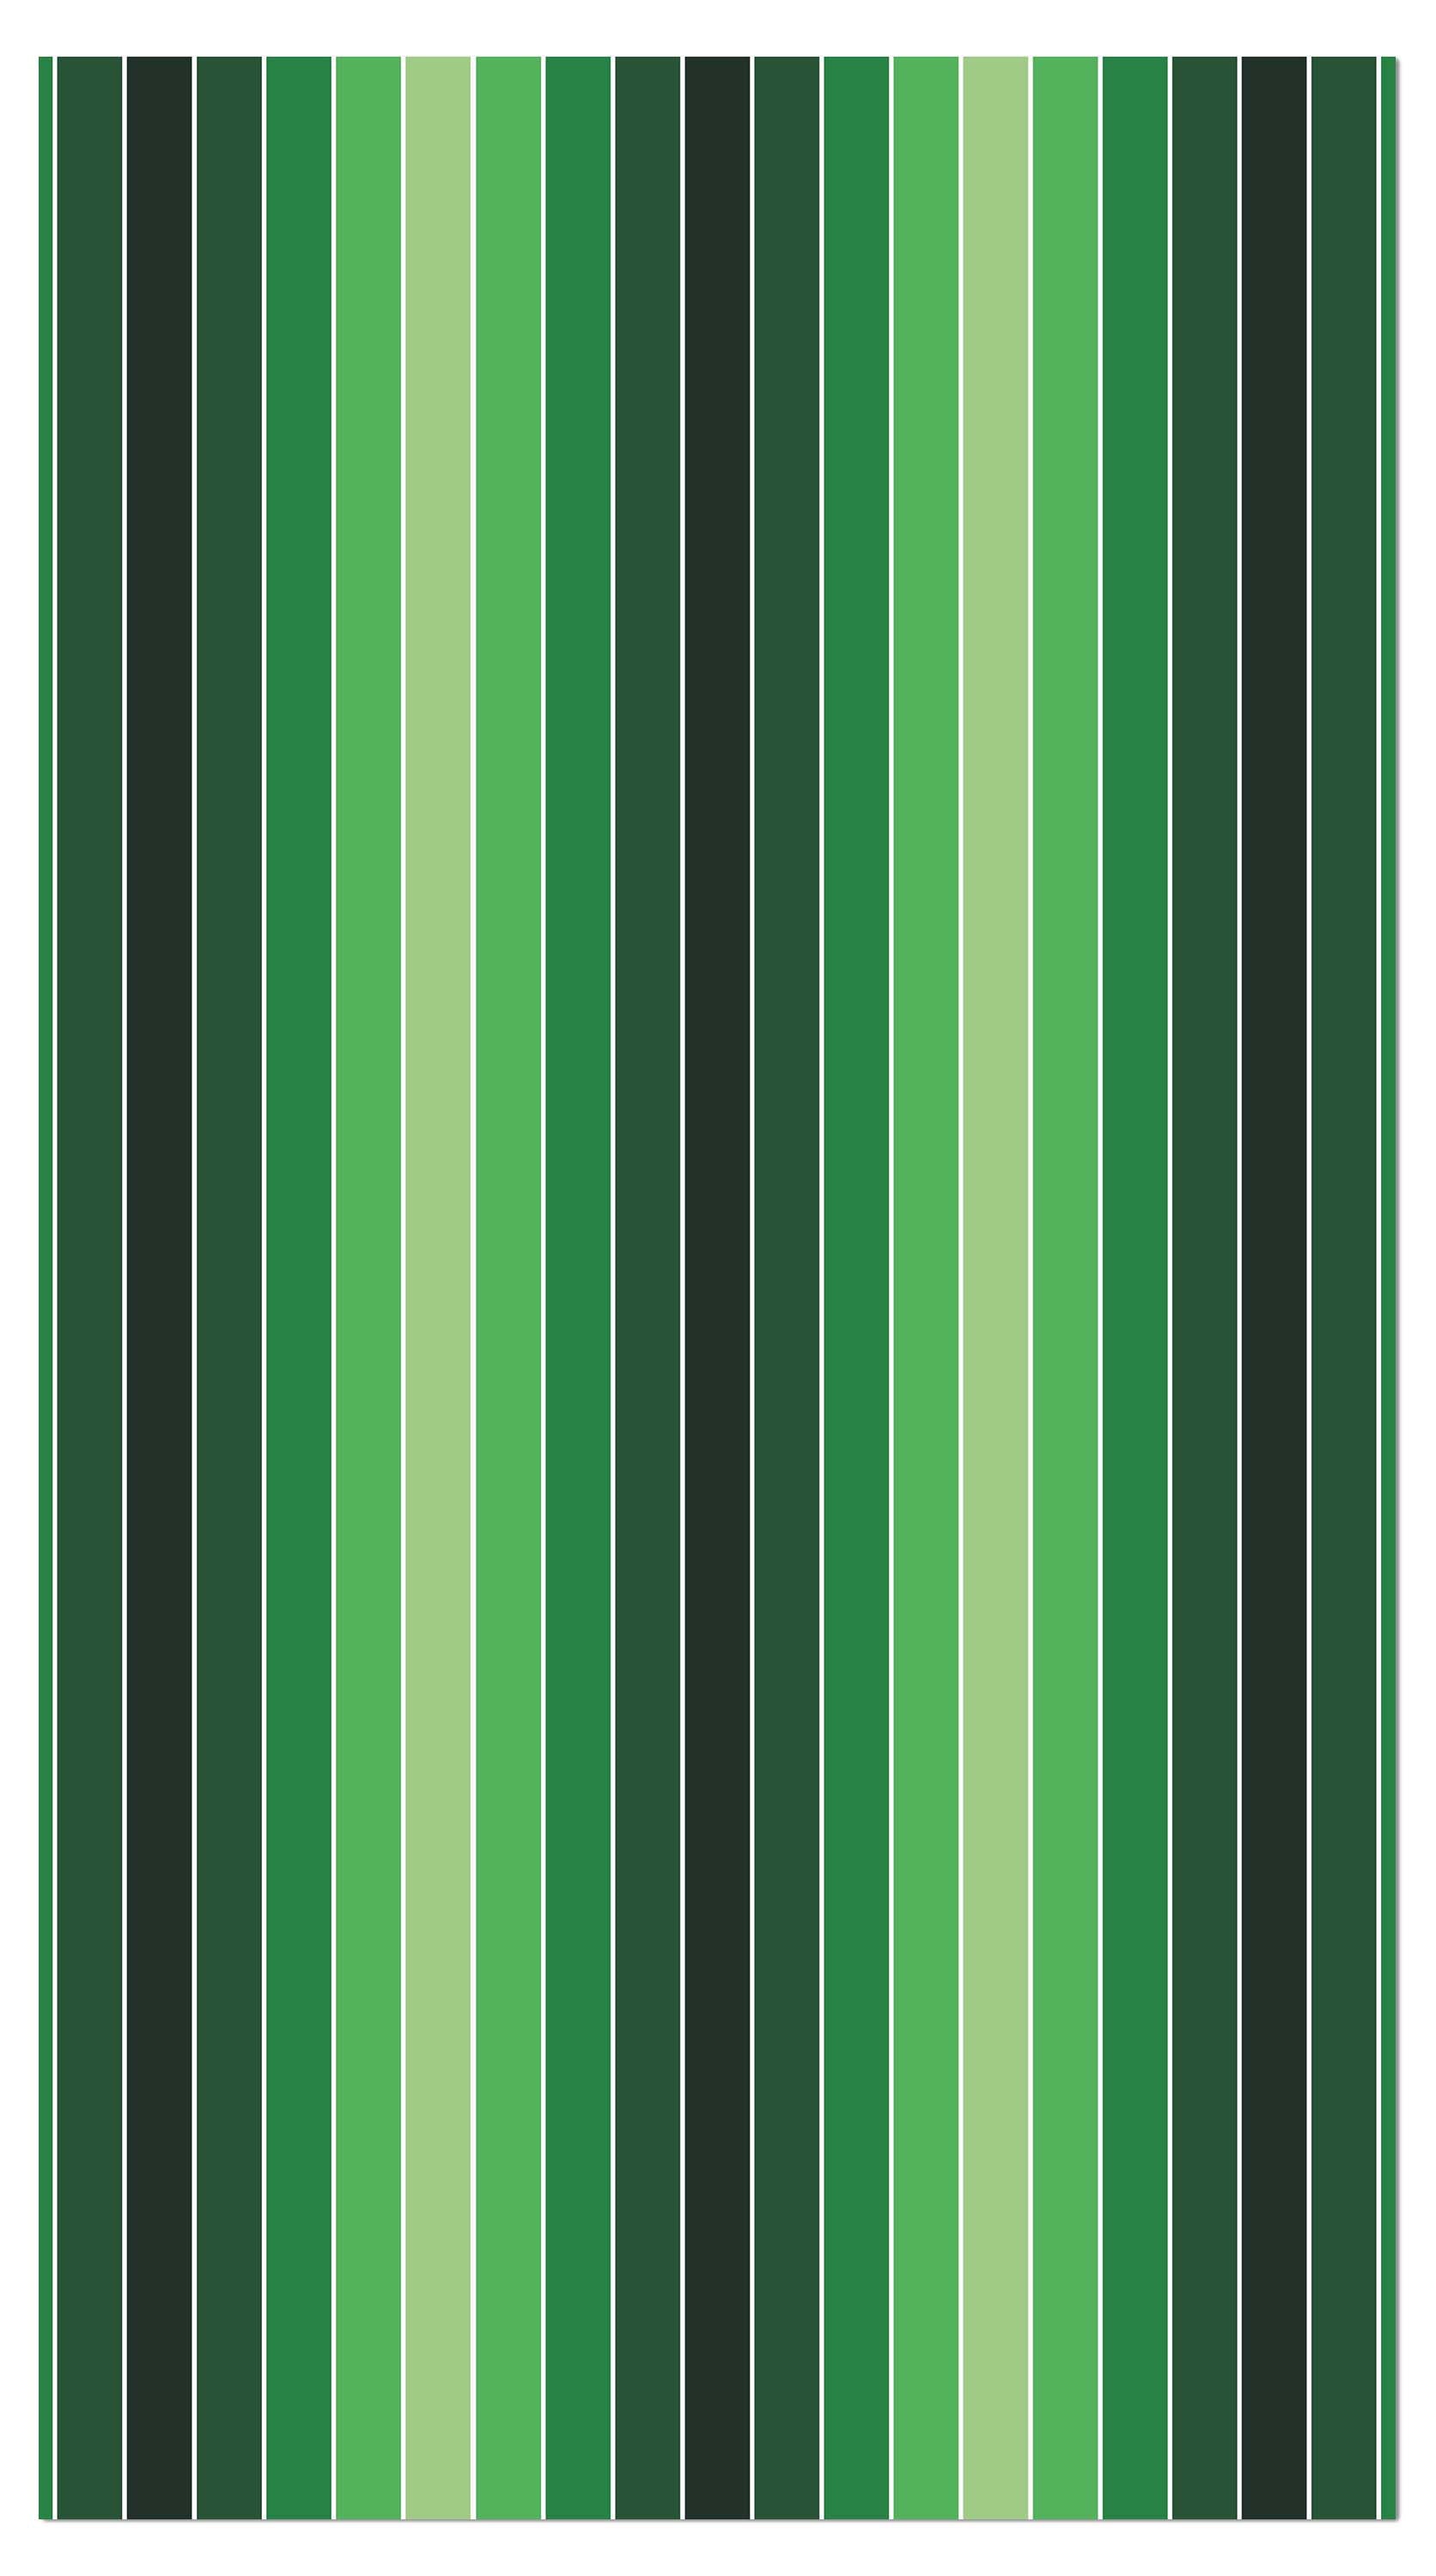 Garderobe Frisches Grün Muster M0090 entdecken - Bild 4